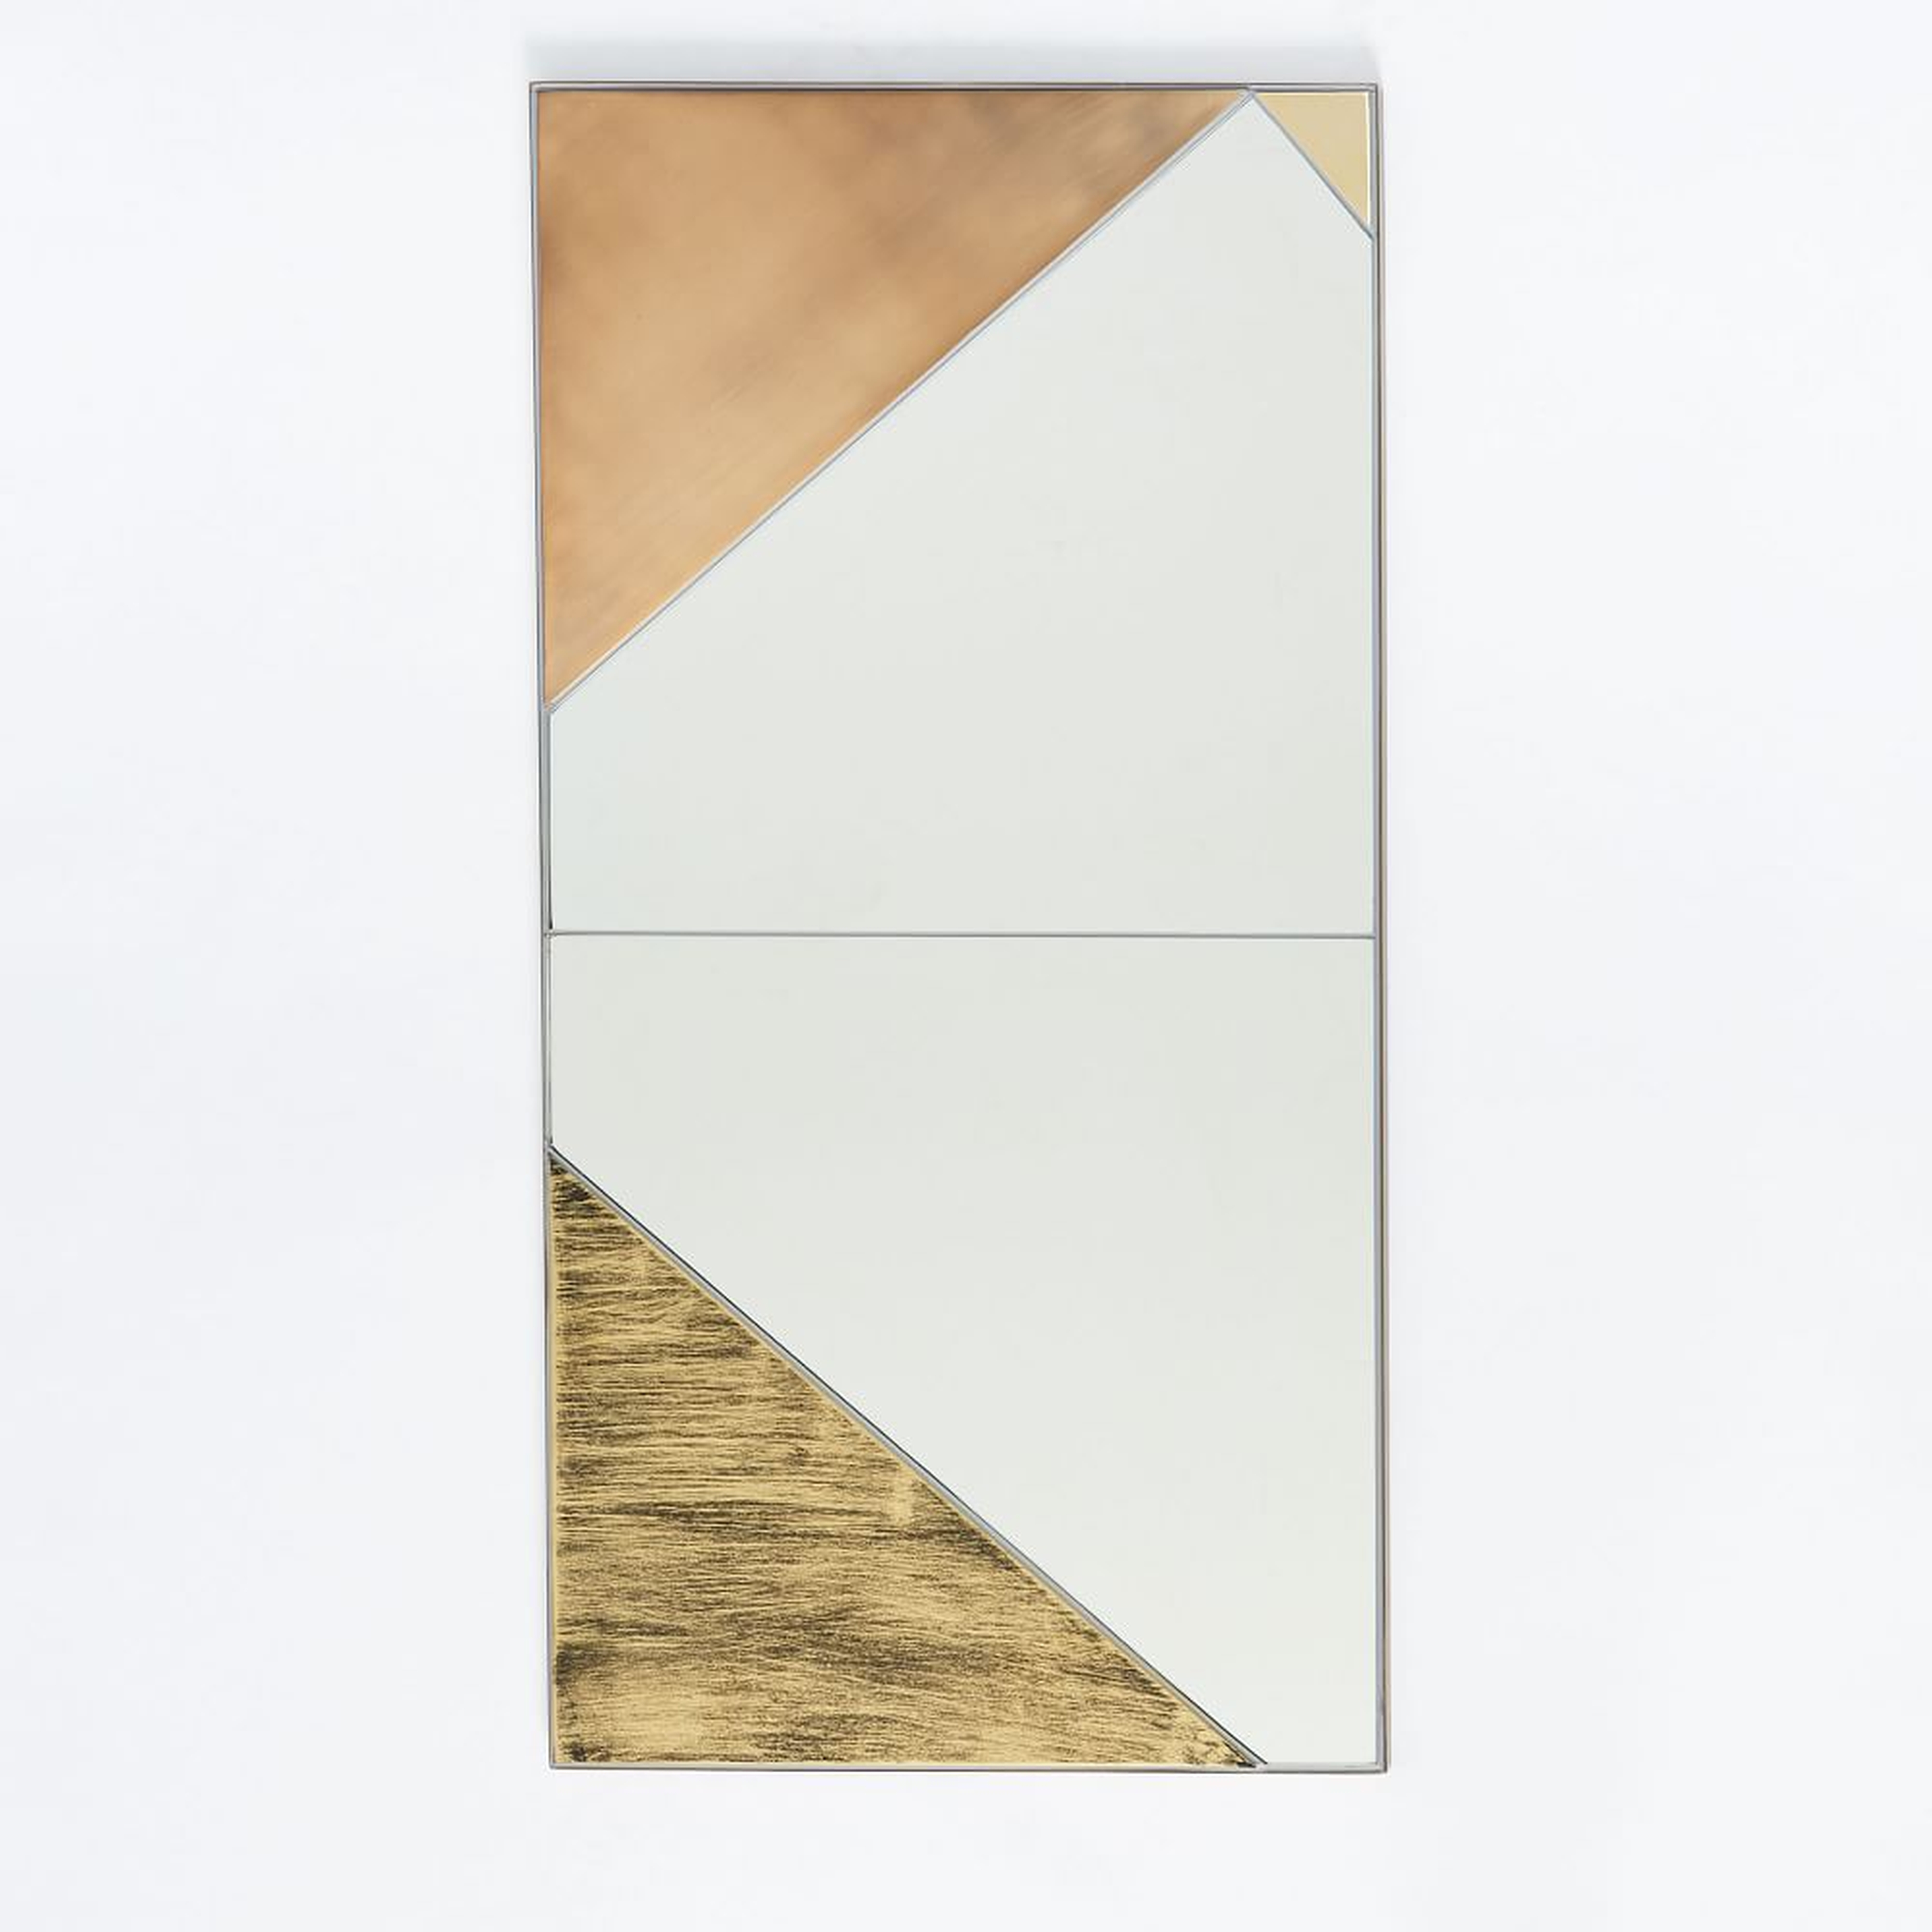 Roar + Rabbit Infinity Mirror, Panel I - West Elm